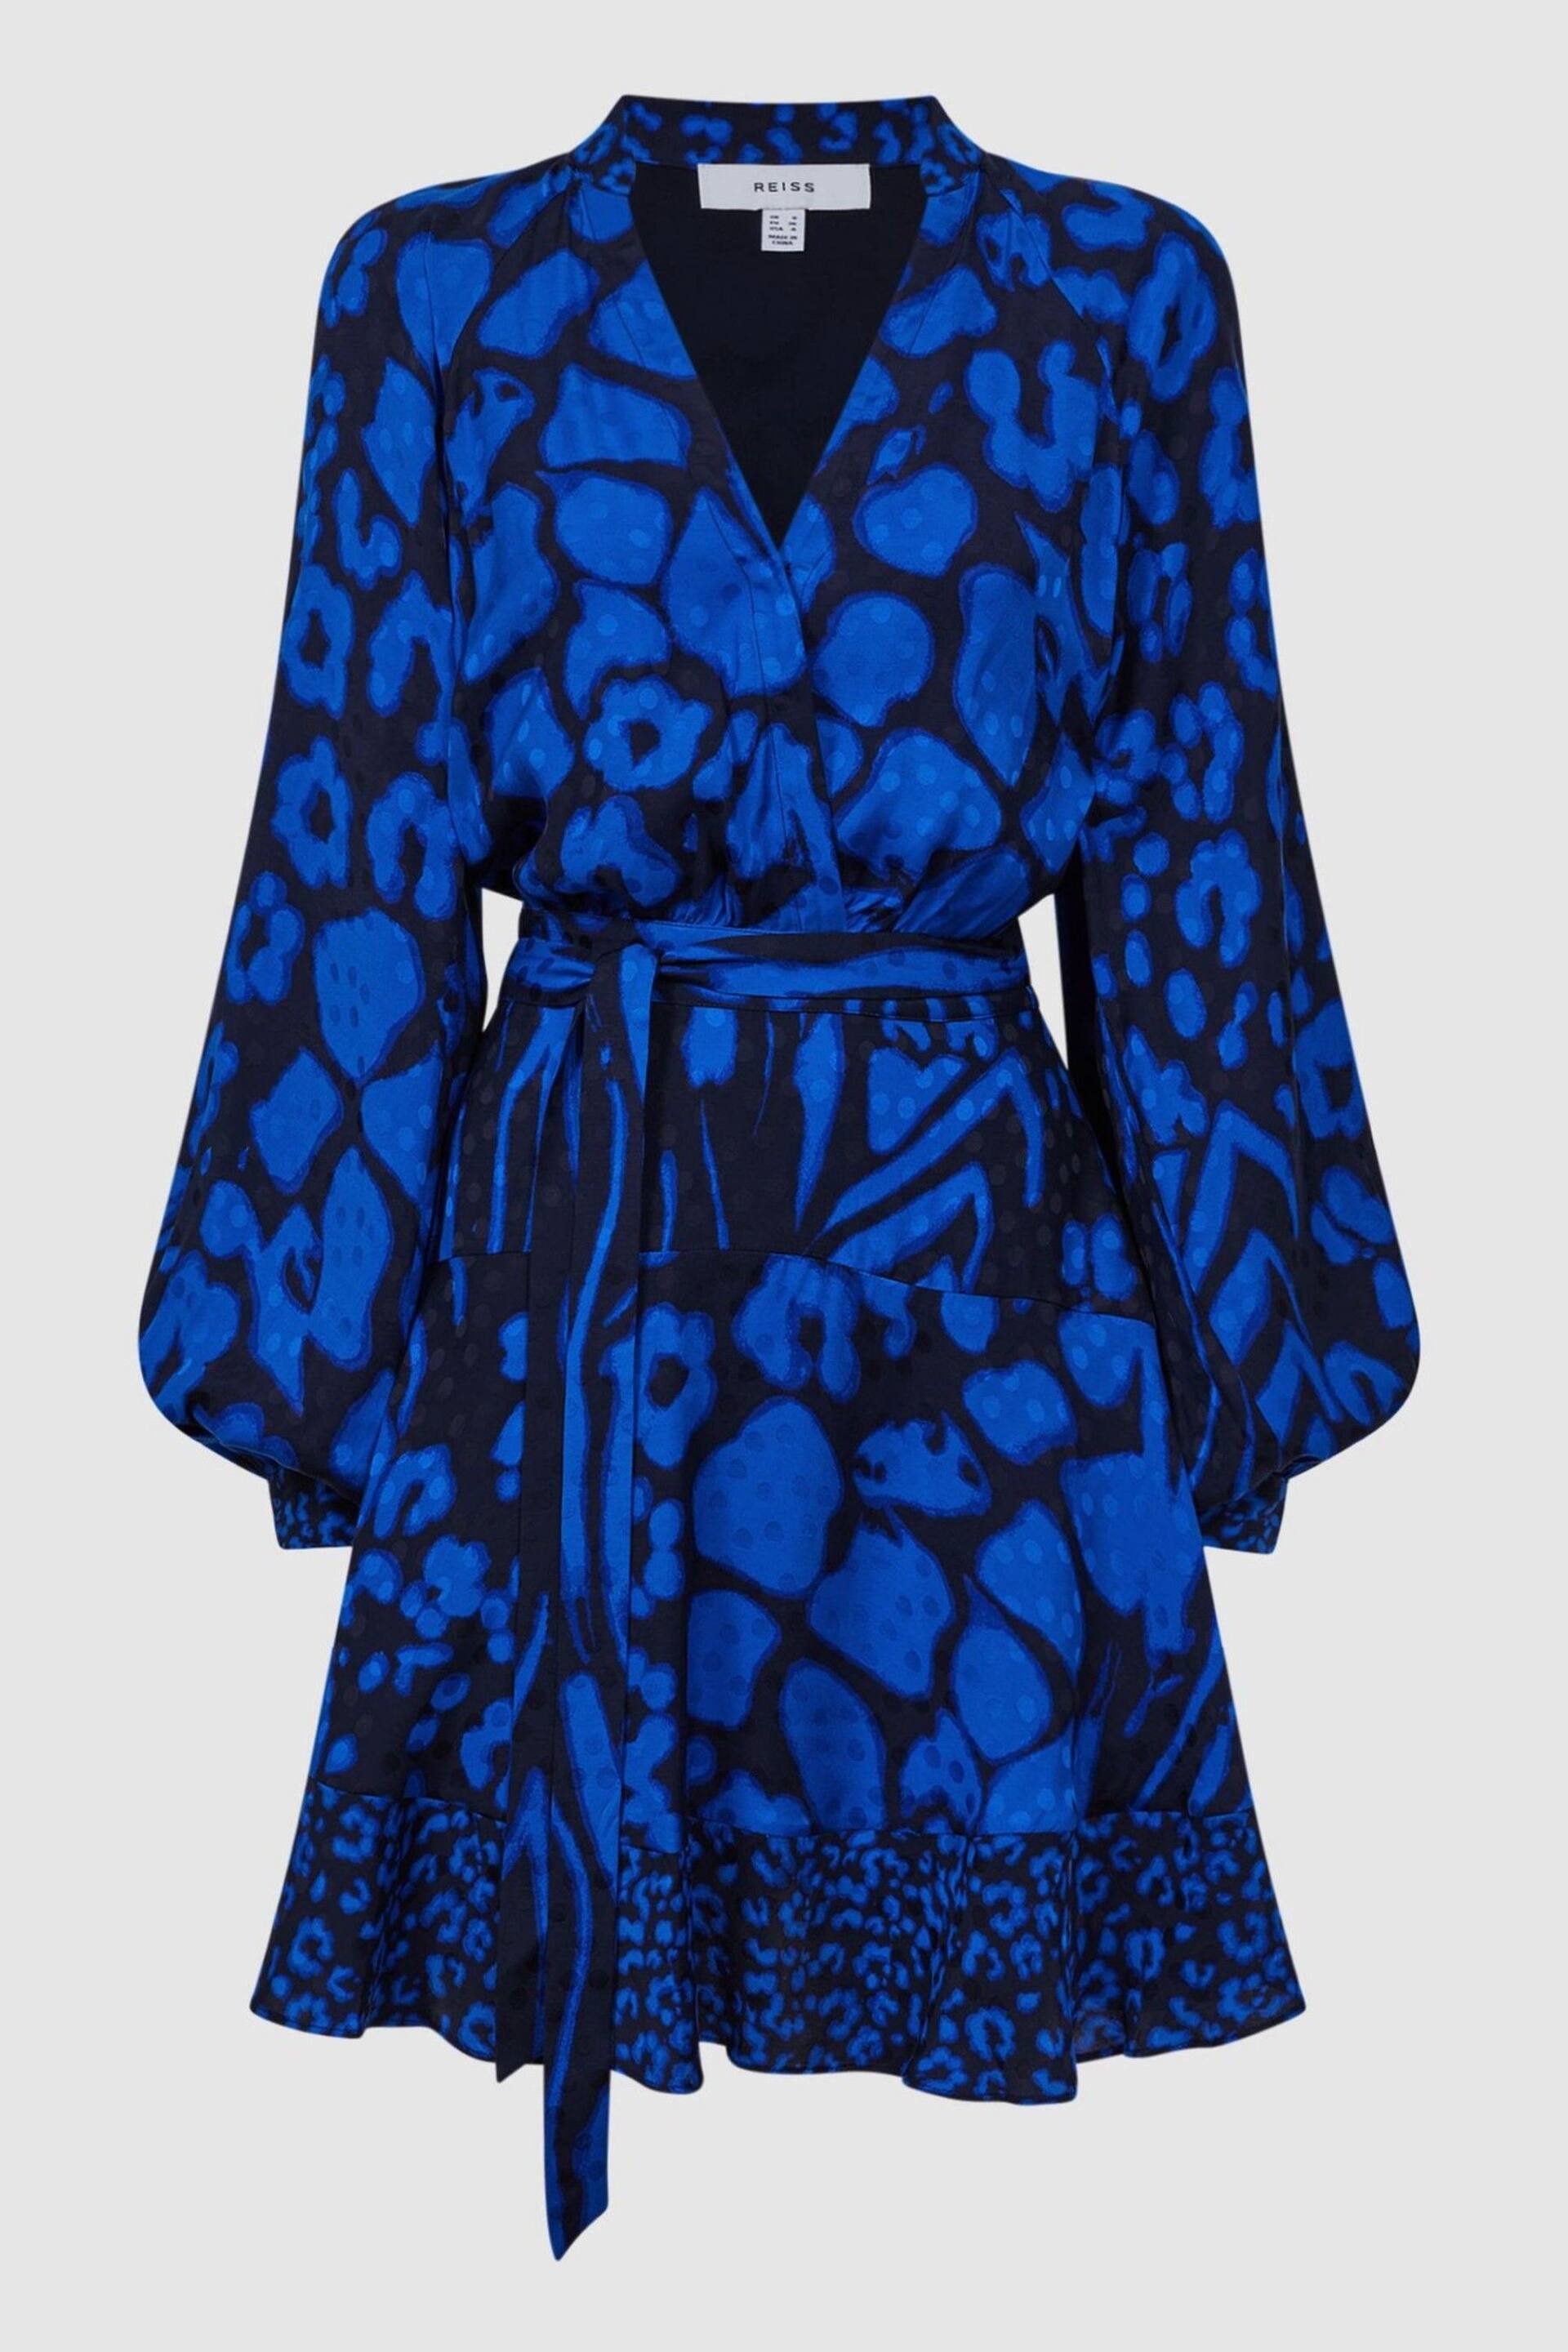 Reiss Blue/Navy Kerri Printed Blouson Sleeve Dress - Image 2 of 5